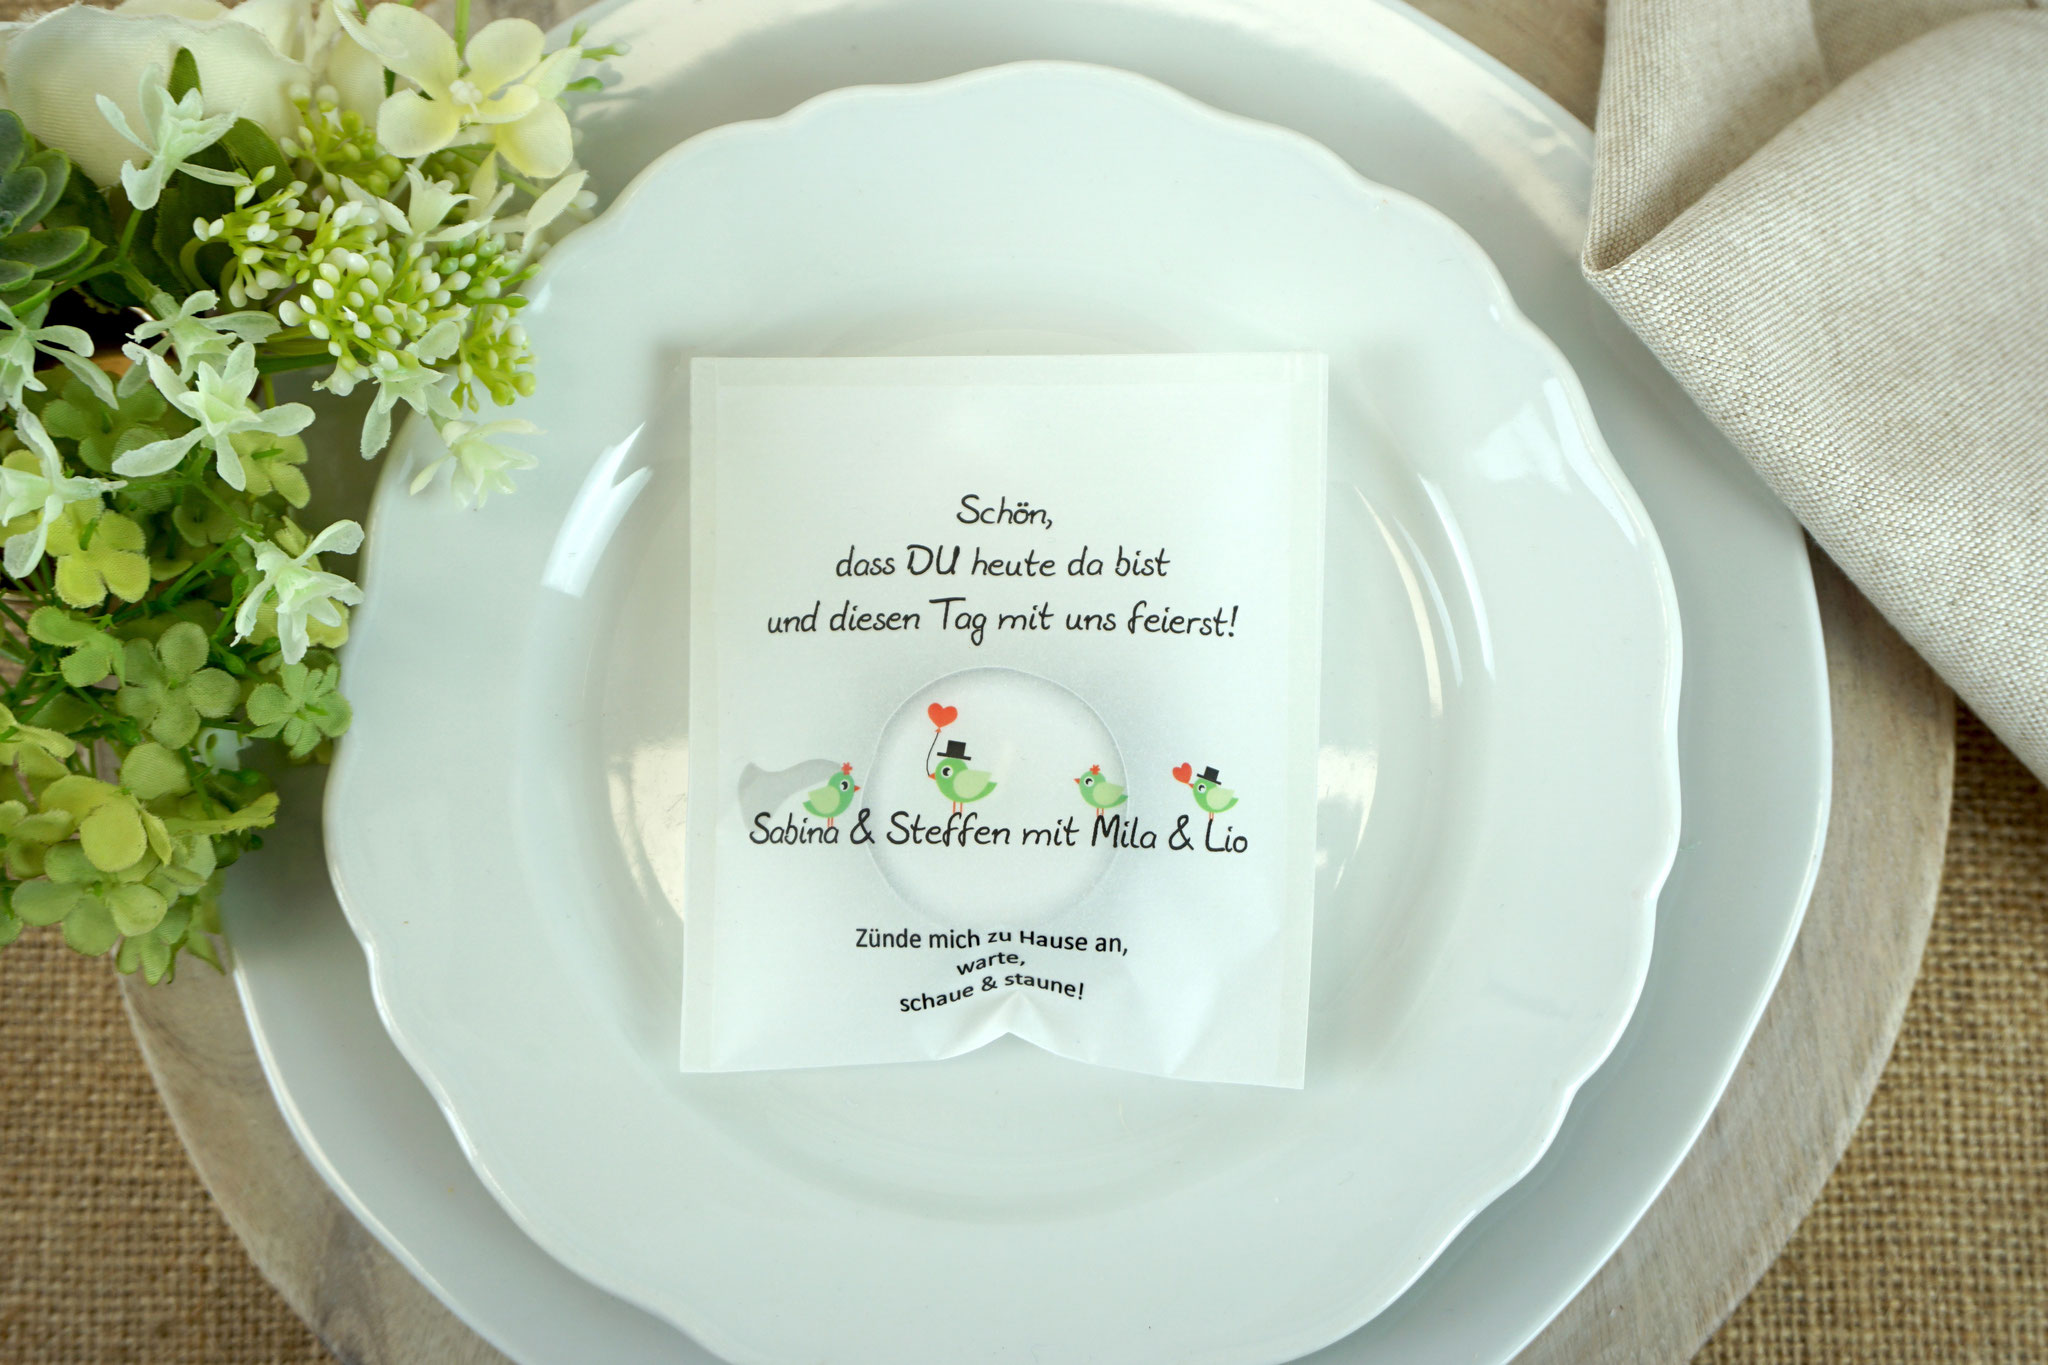 Licht-Botschaft Design "Hochzeitsvögel Mr & Mrs" - Farbe Apfelgrün - Eine Familie heiratet